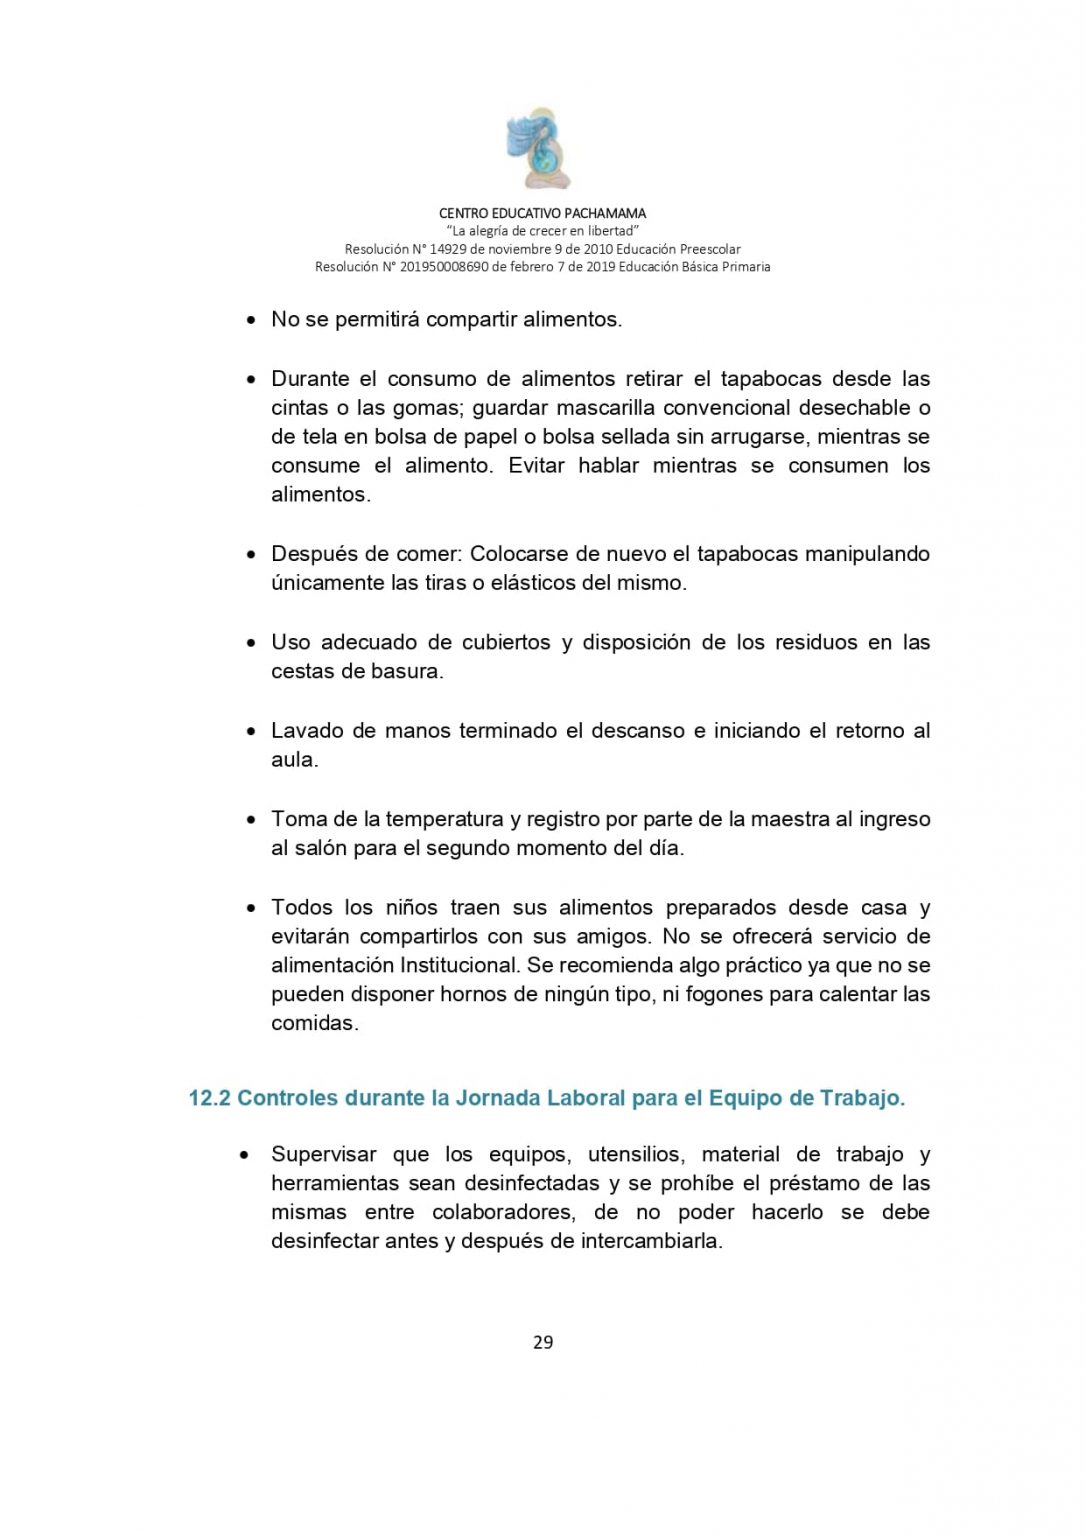 PROTOCOLO DE BIOSEGURIDAD PACHAMAMA Última Versión (3)-convertido_page-0029